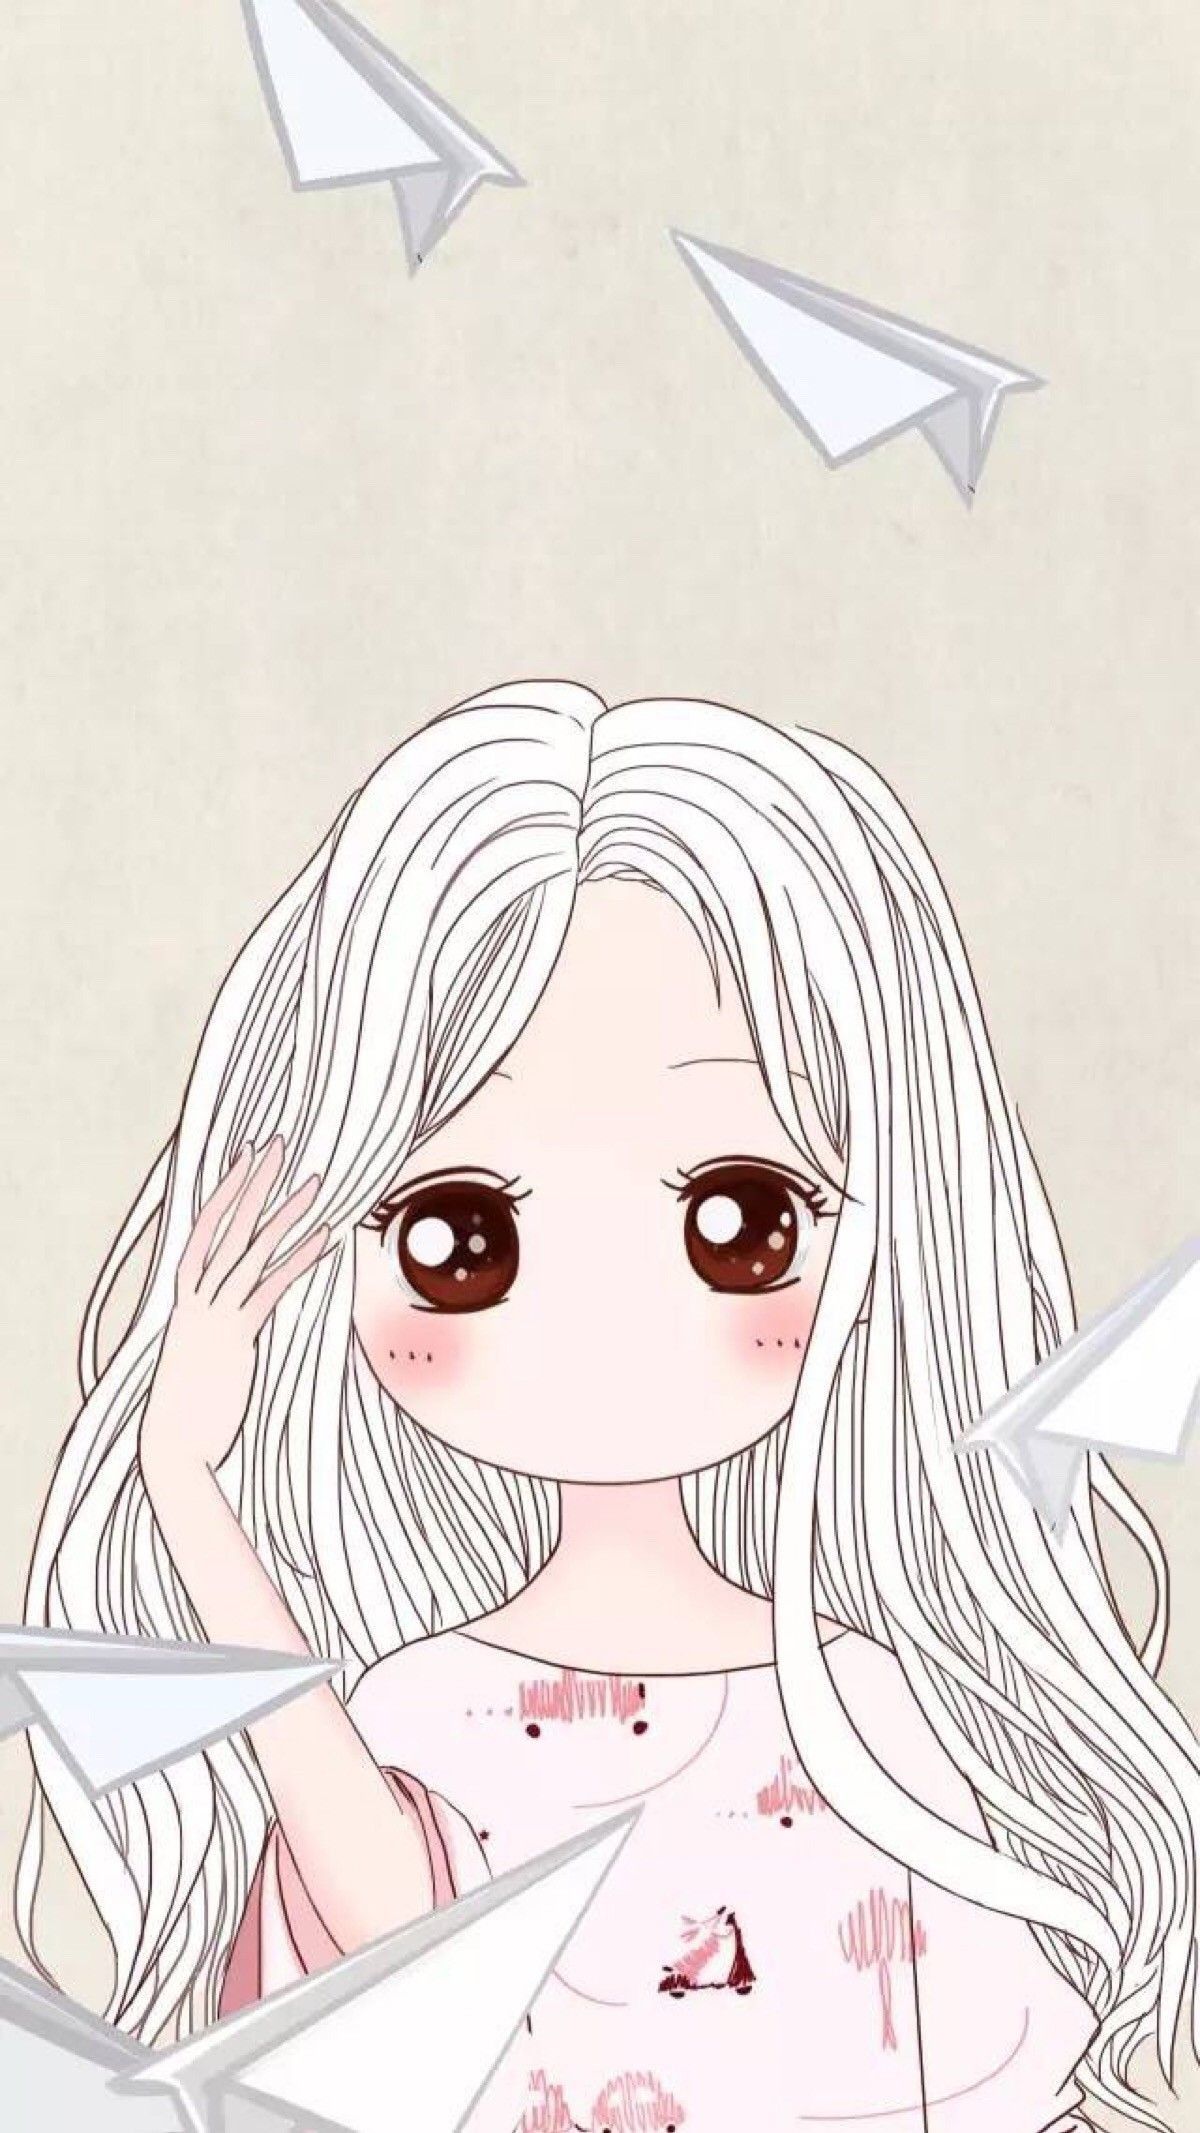 Hình nền Chibi cô gái Anime: Xem và tải miễn phí hình nền Chibi cô gái Anime tuyệt đẹp cho điện thoại của bạn! Đảm bảo bạn sẽ hài lòng với sự kết hợp giữa duyên dáng và nét dễ thương của những hình ảnh này.